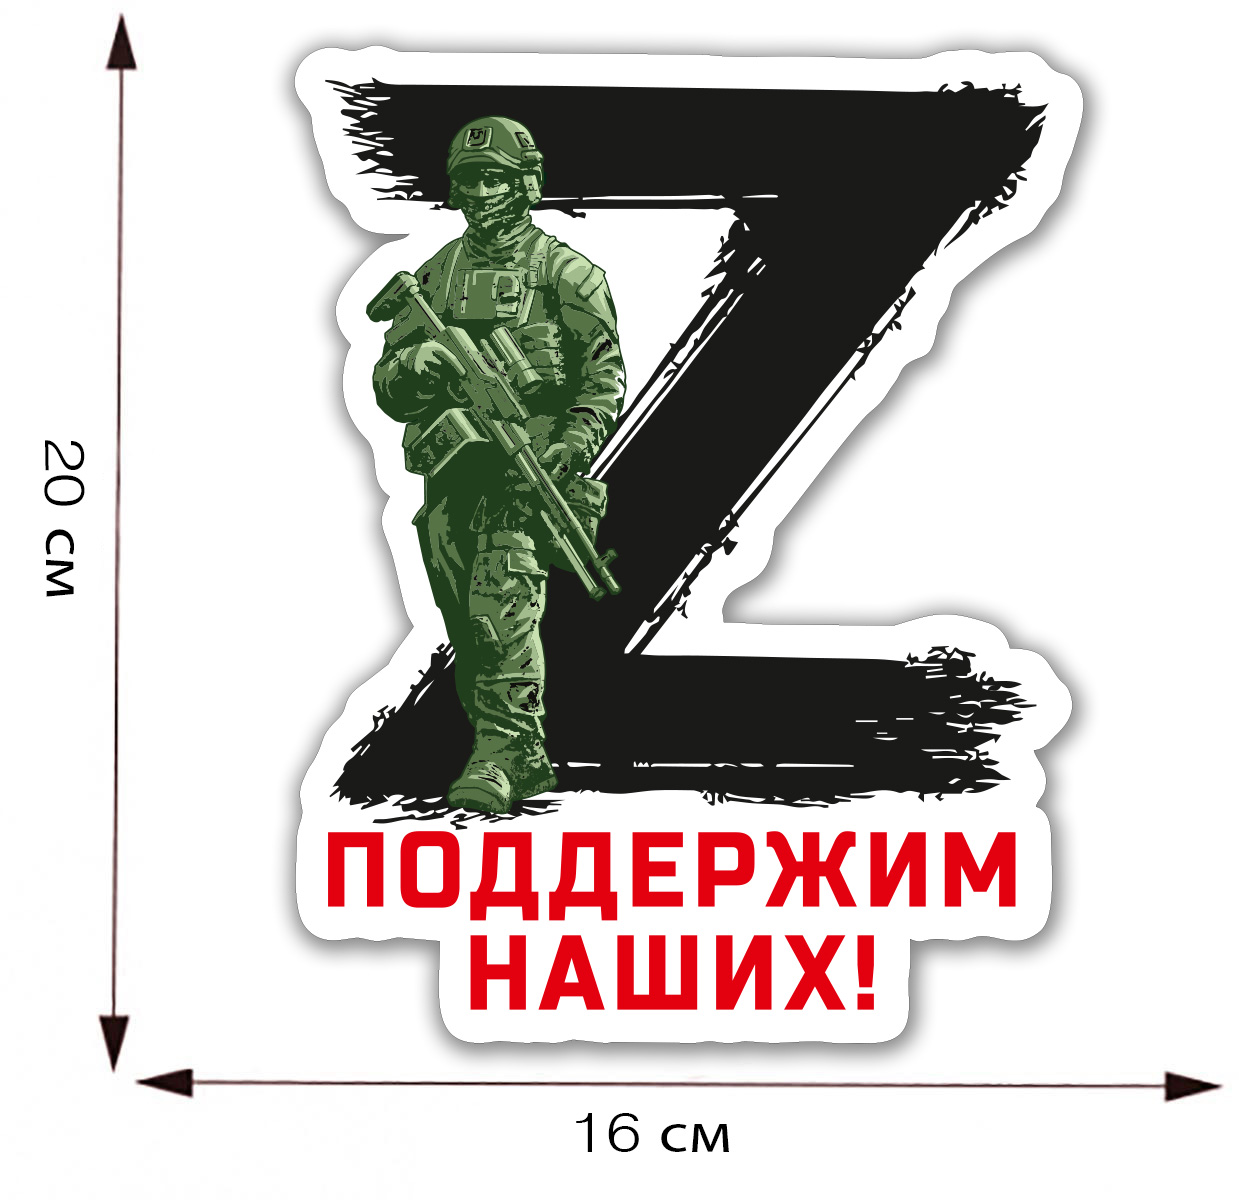 Автомобильная наклейка символ Z "Поддержим наших!"